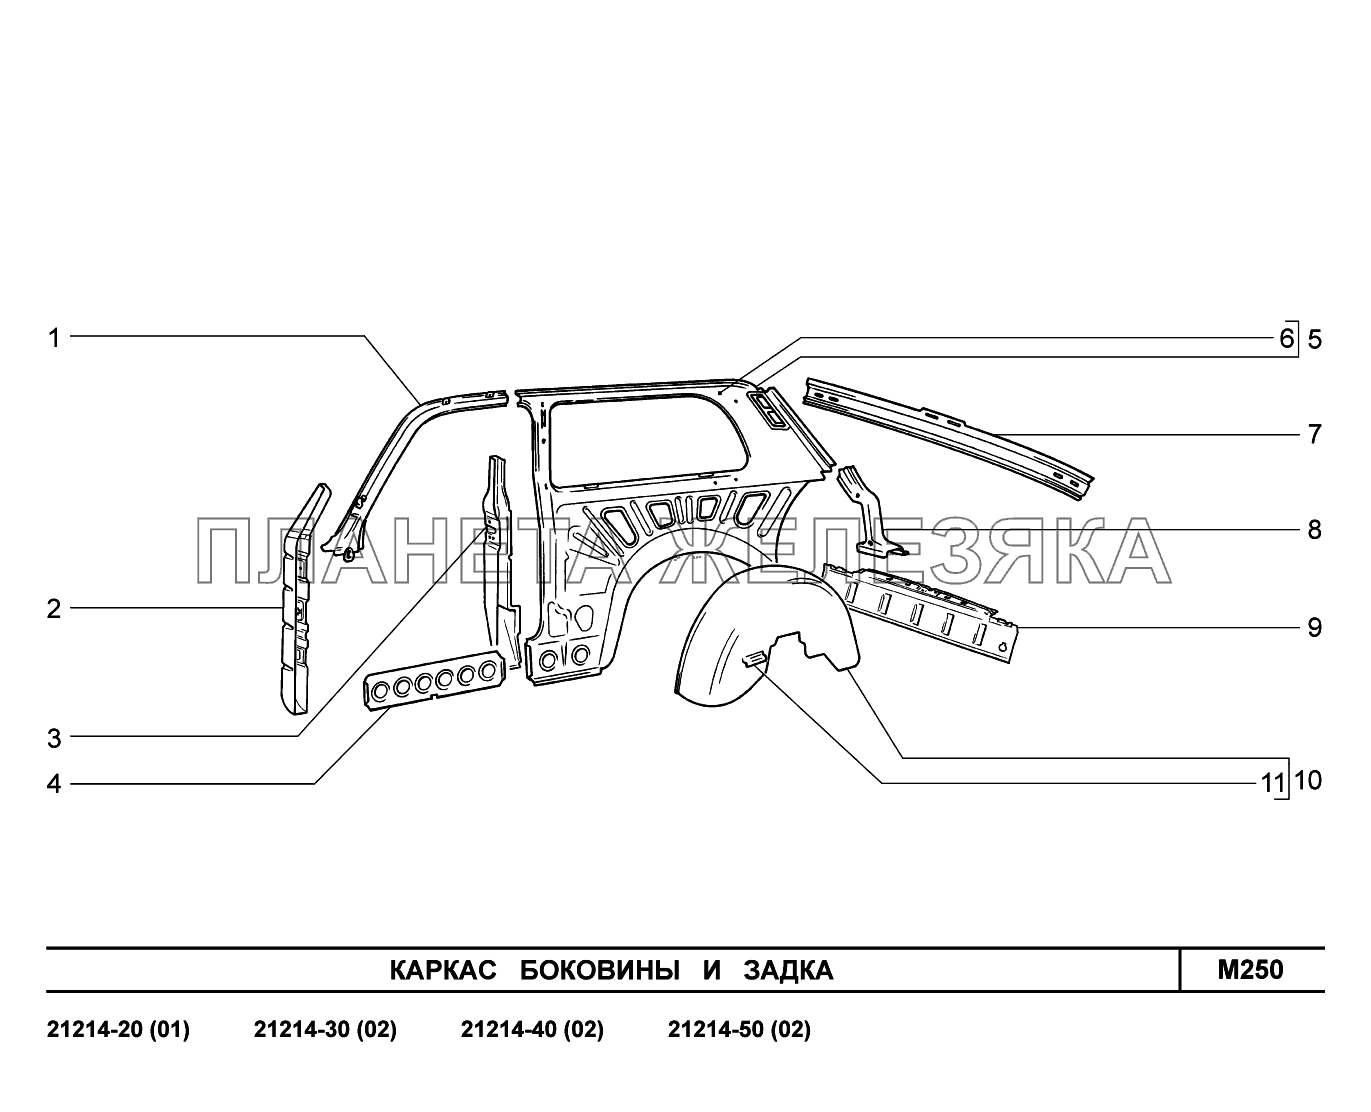 M250. Каркас боковины и задка LADA 4x4